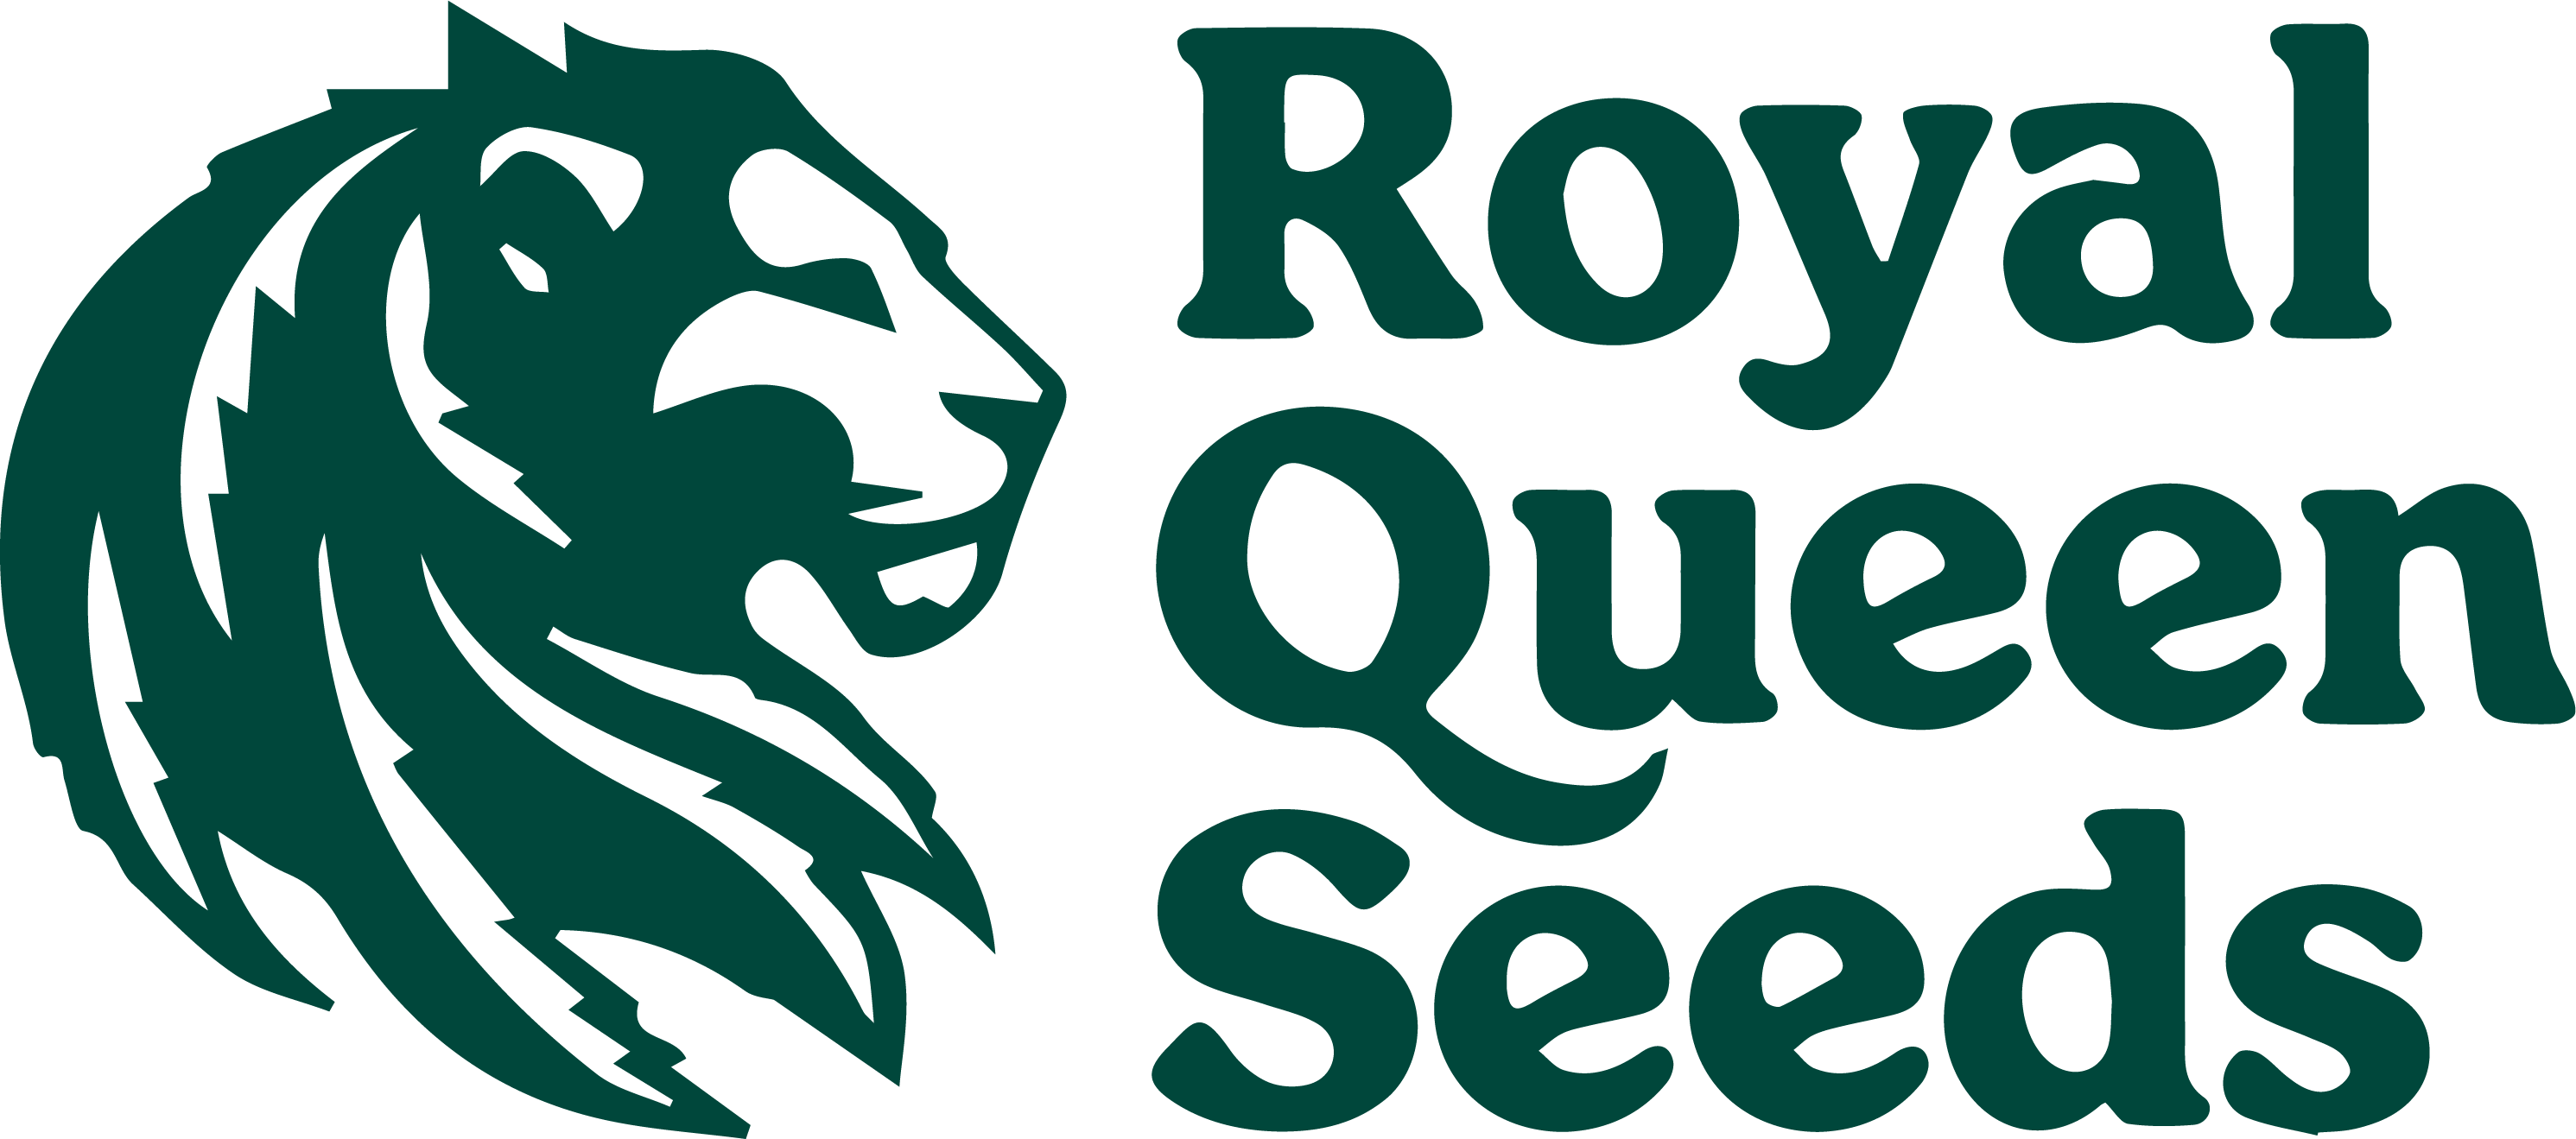 Royal Queen Seeds - CBD Cannabis Seeds